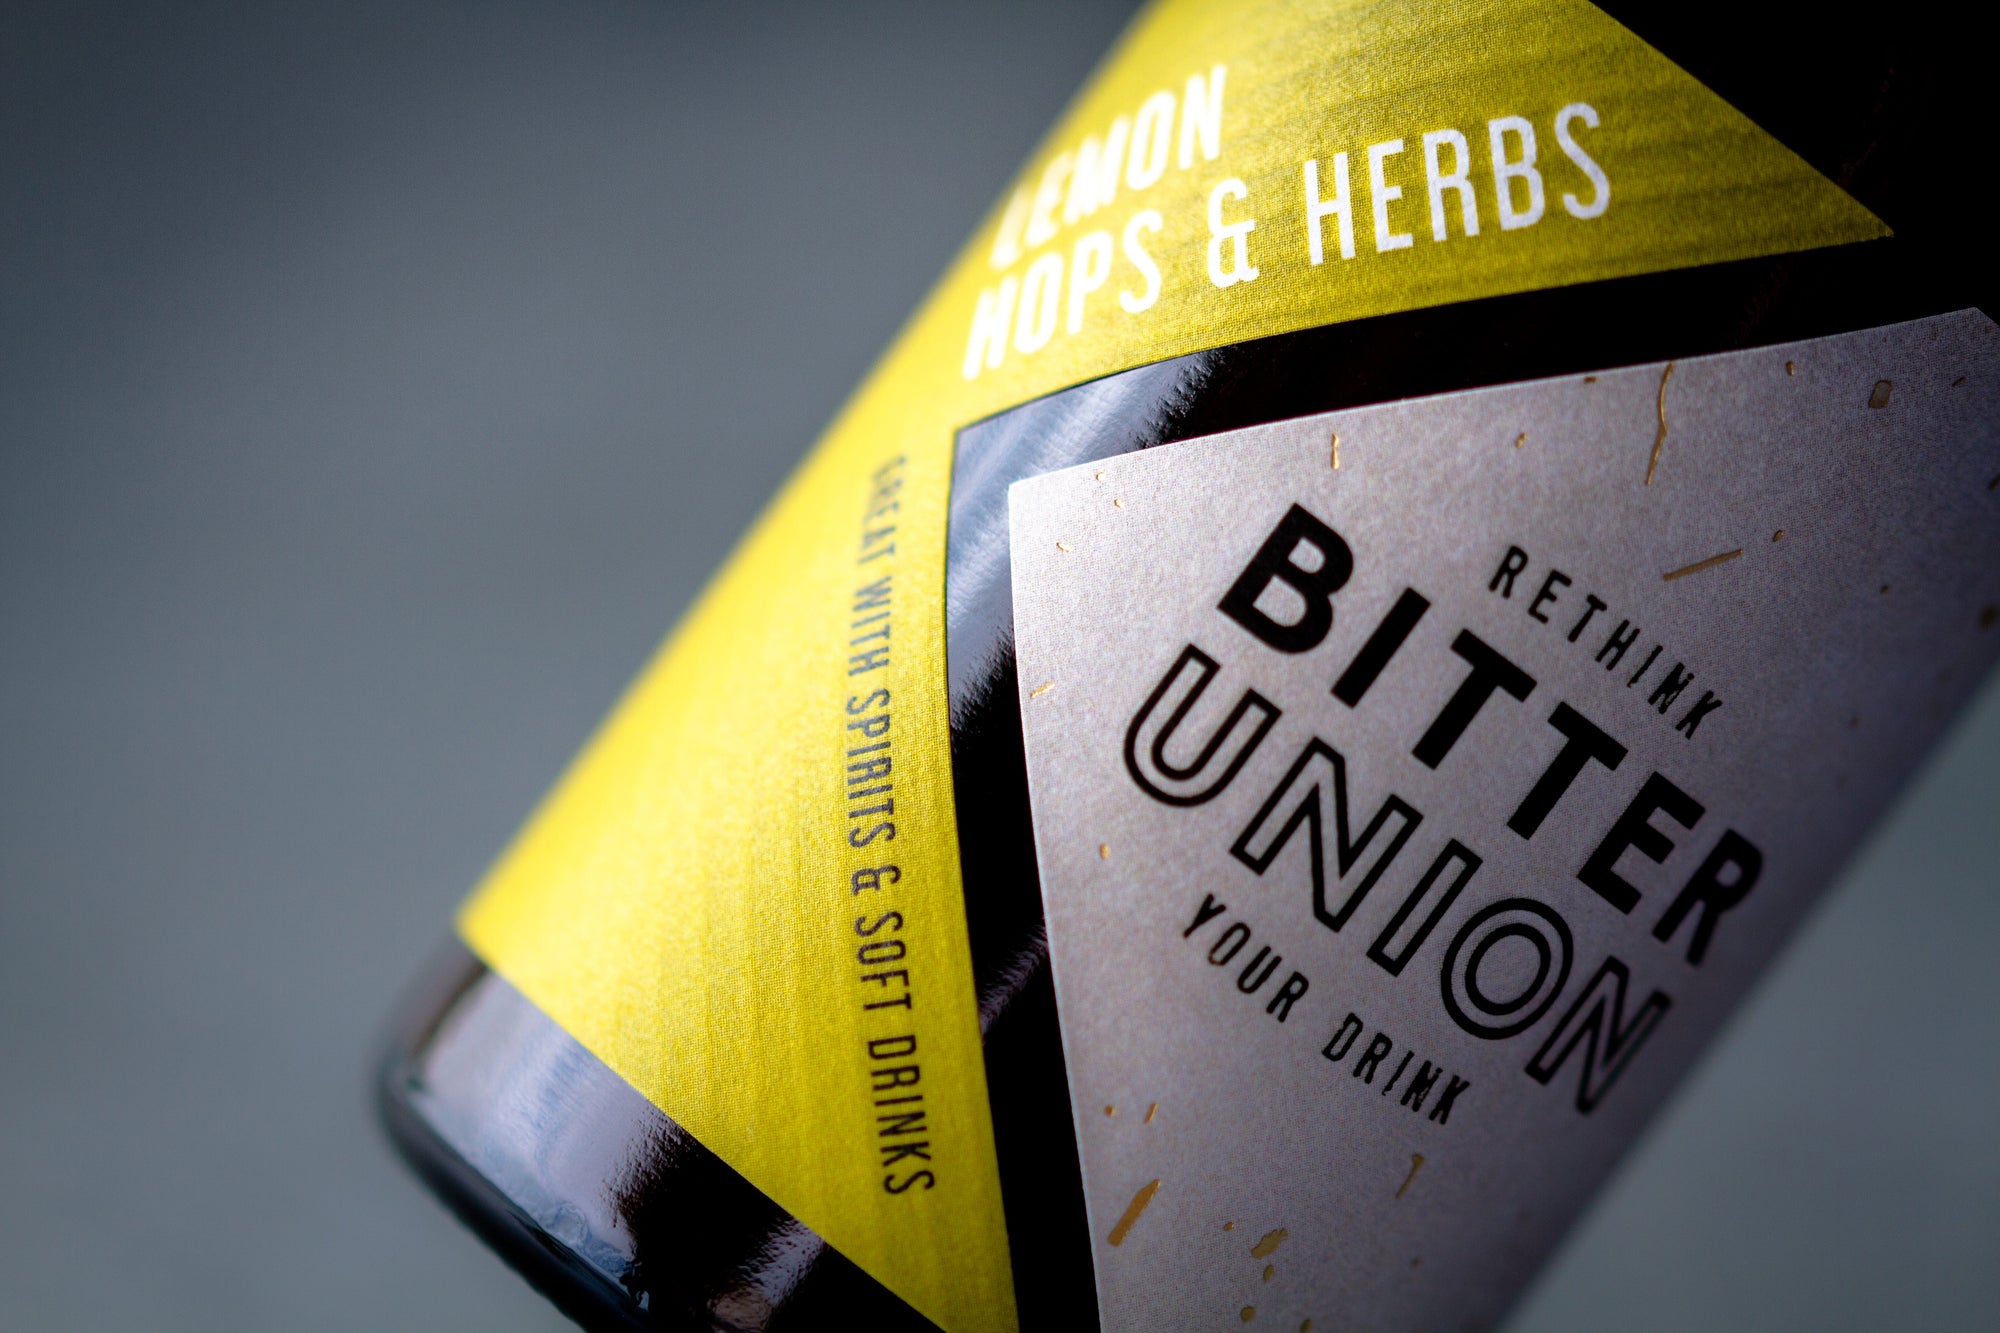 Bottle of Bitter Union Lemon Hop & Herbs, 31.5% - The Spirits Room